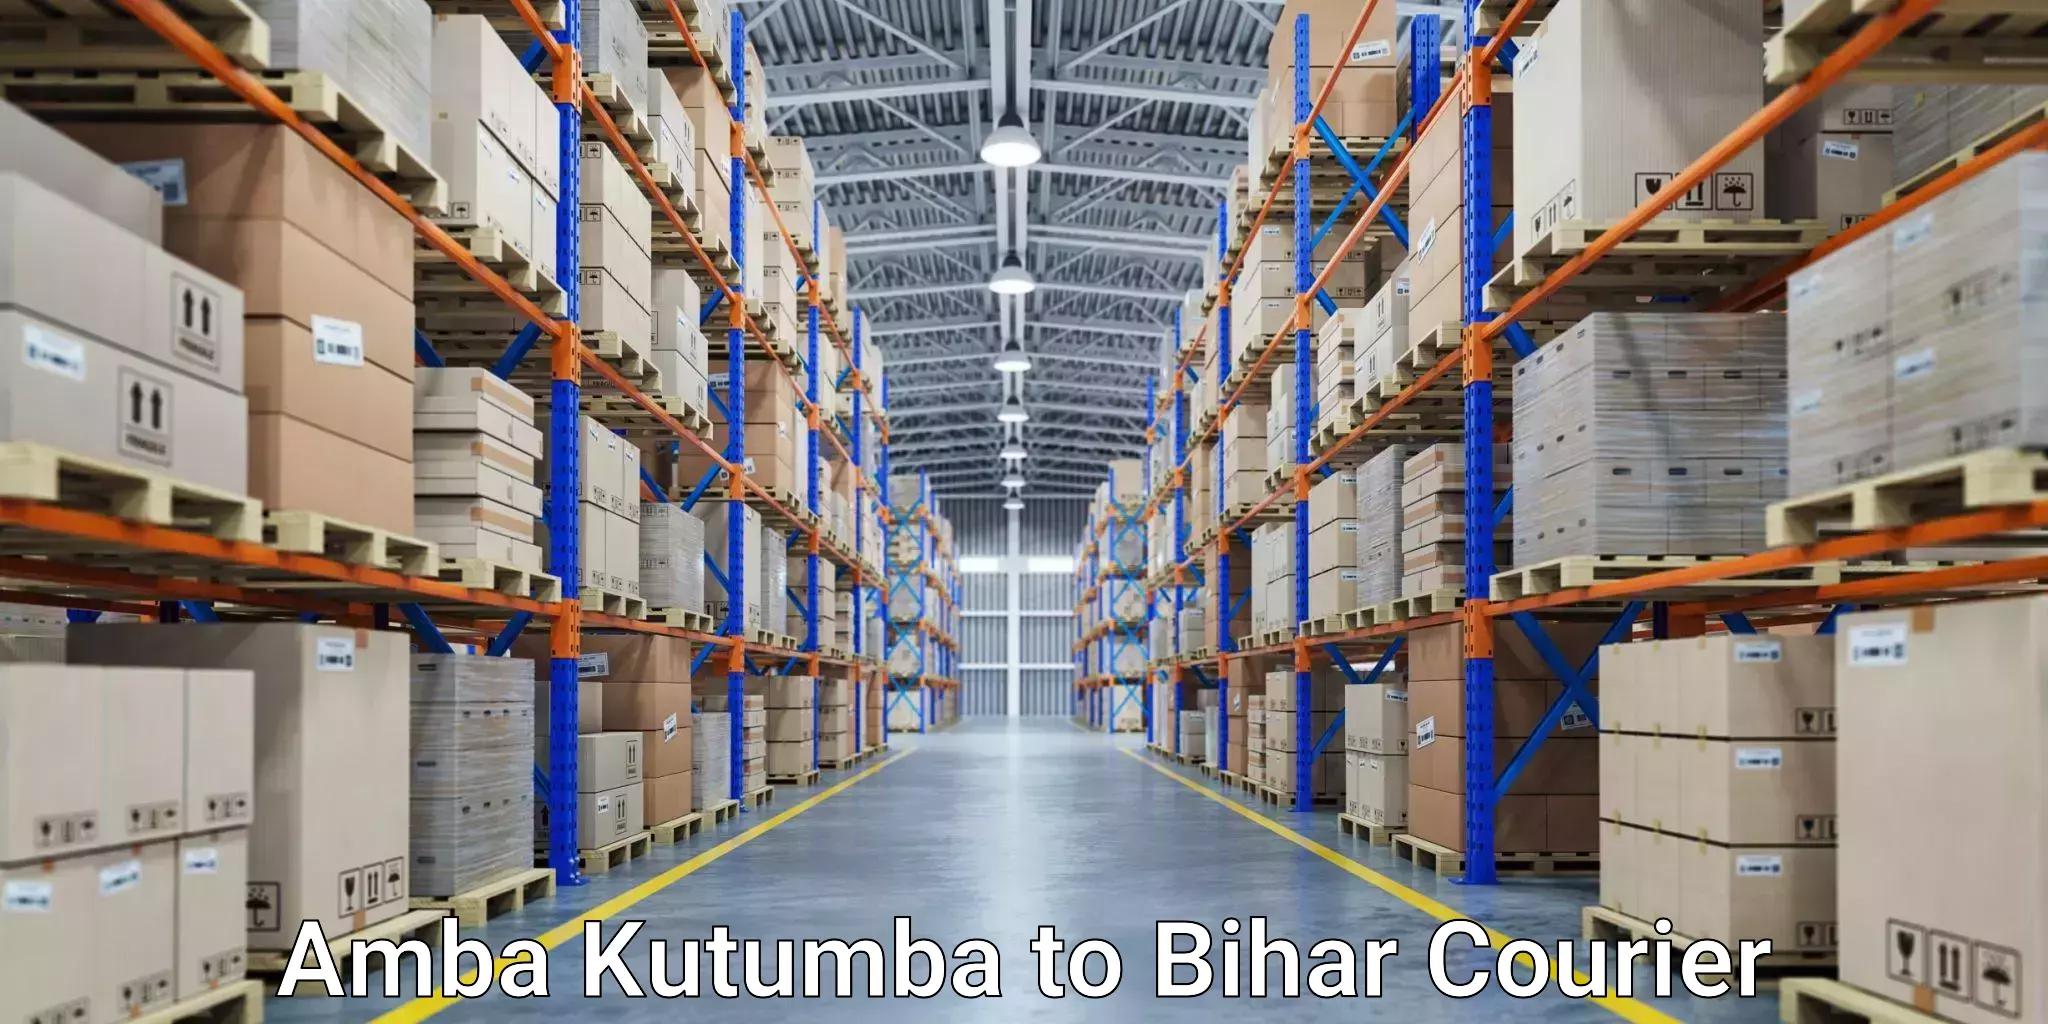 Digital courier platforms Amba Kutumba to Bihar